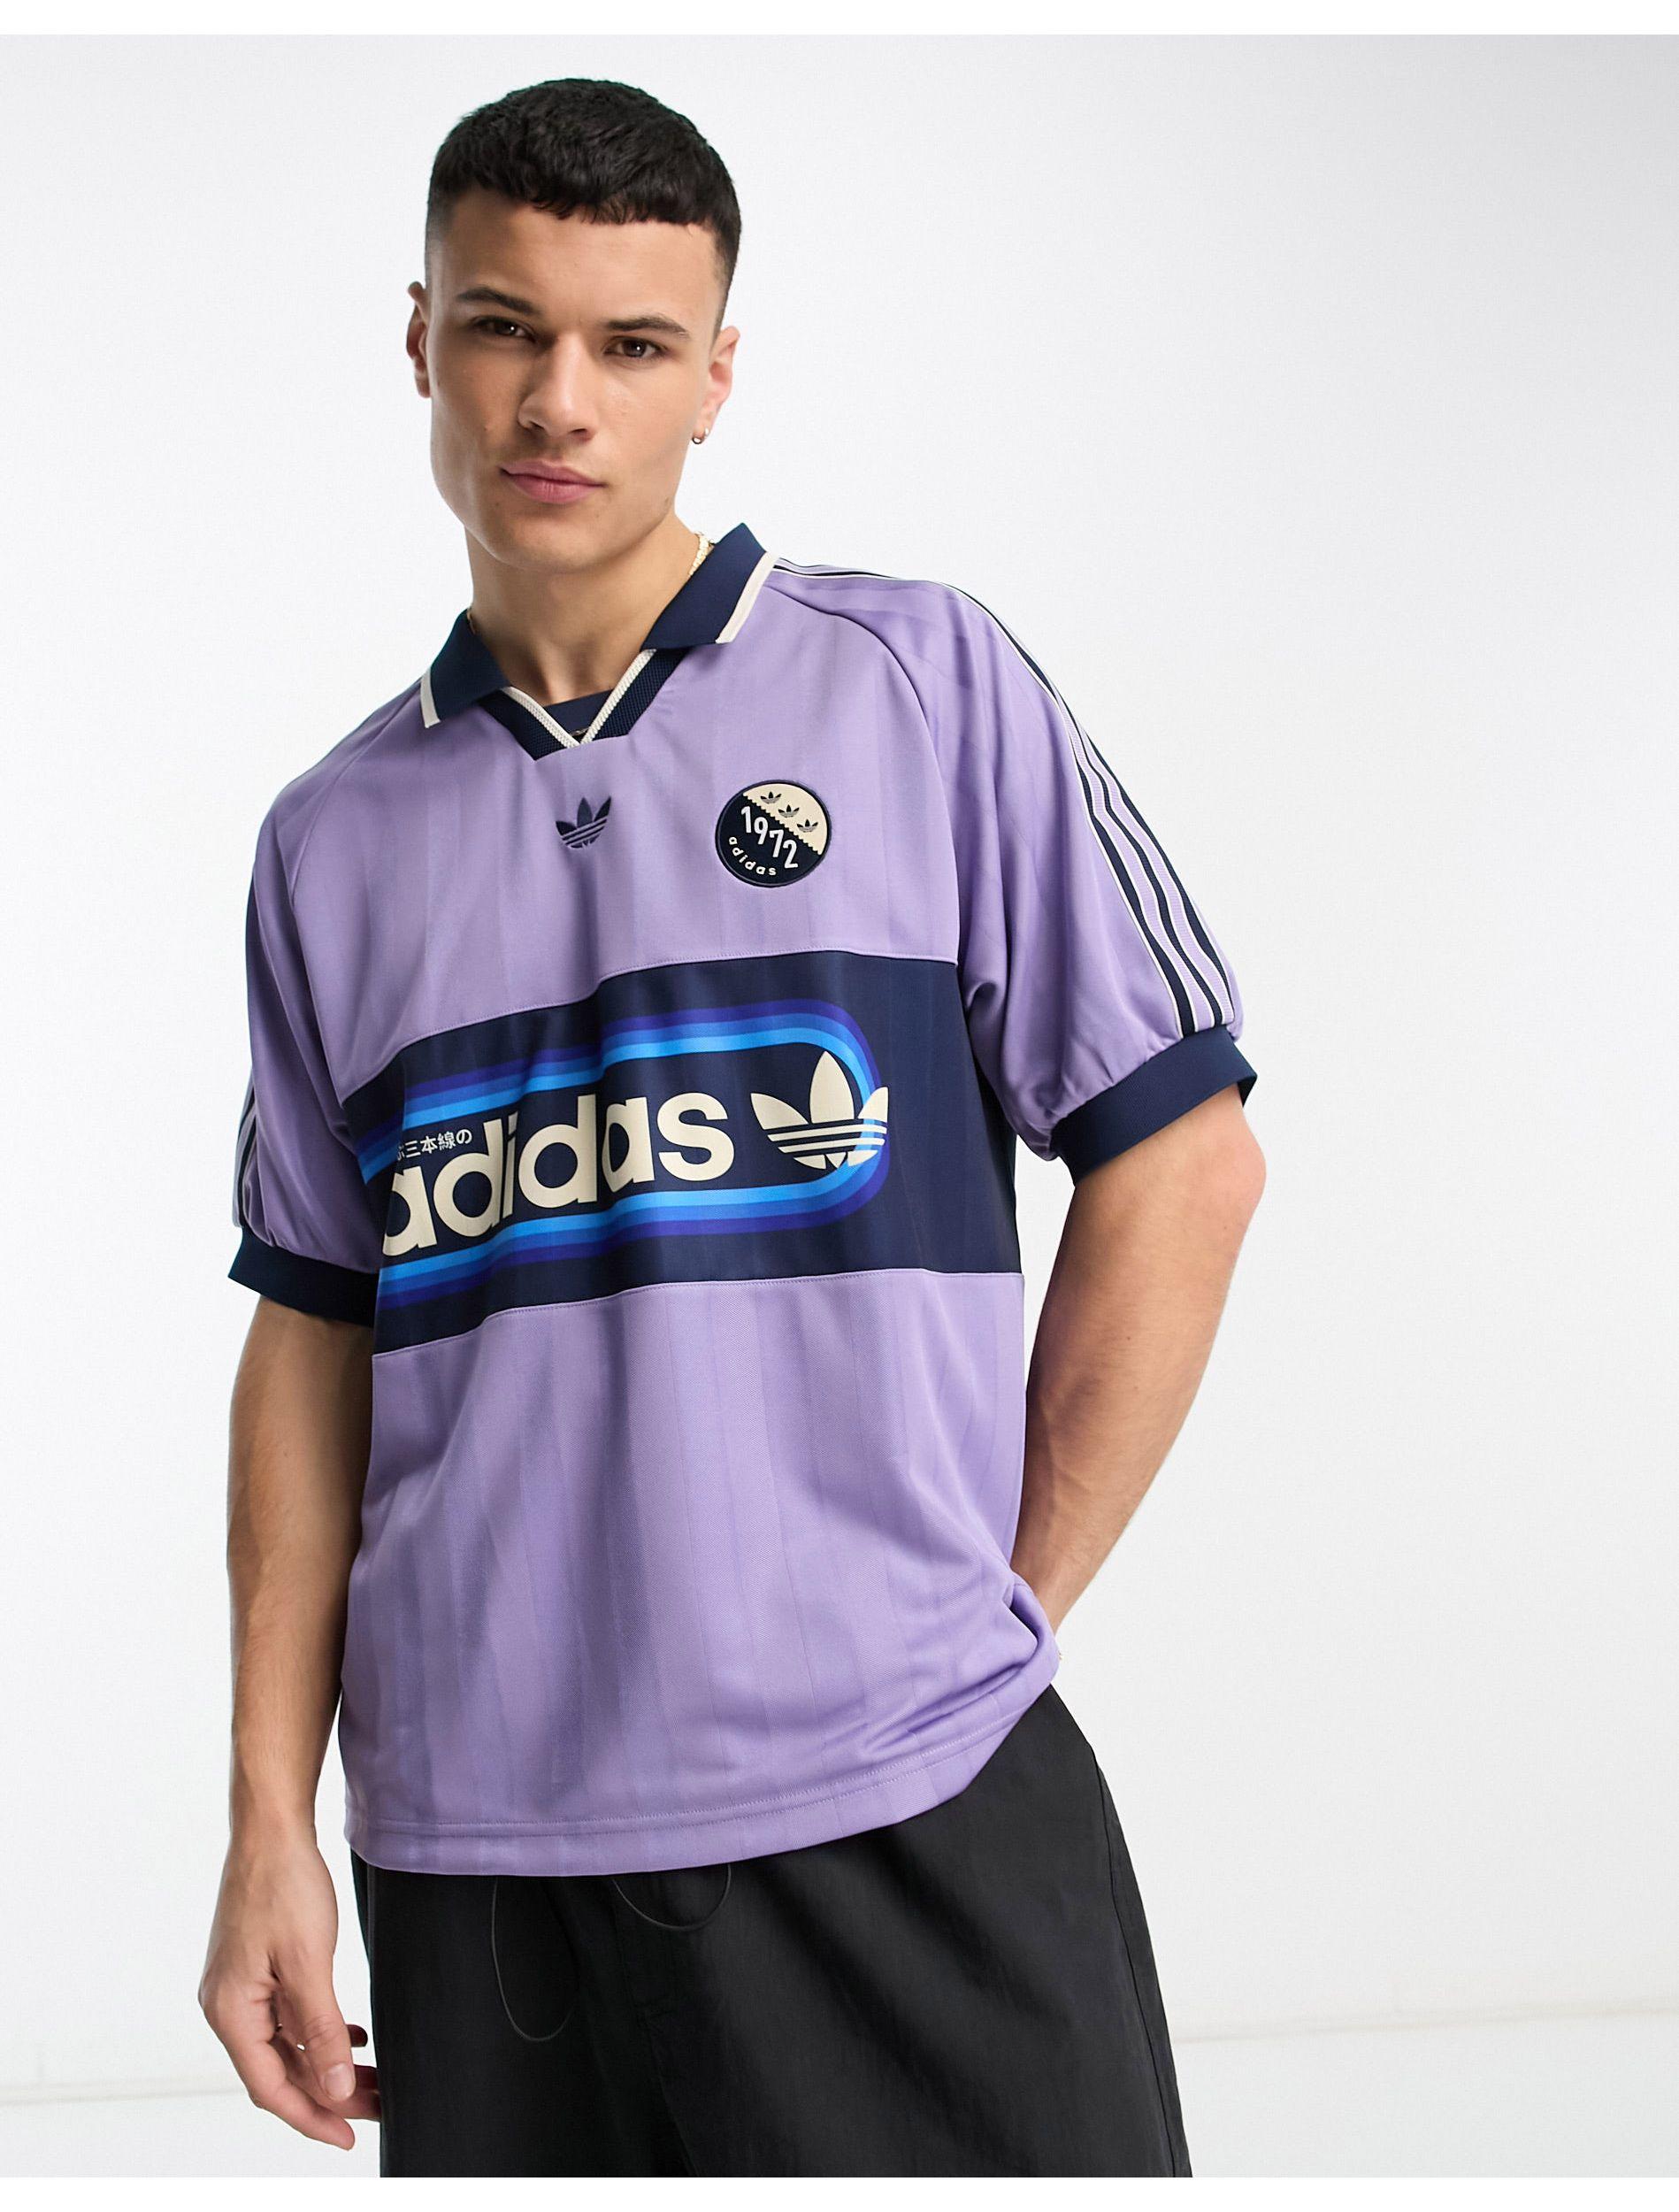 Retro Adidas Football Shirts | lupon.gov.ph